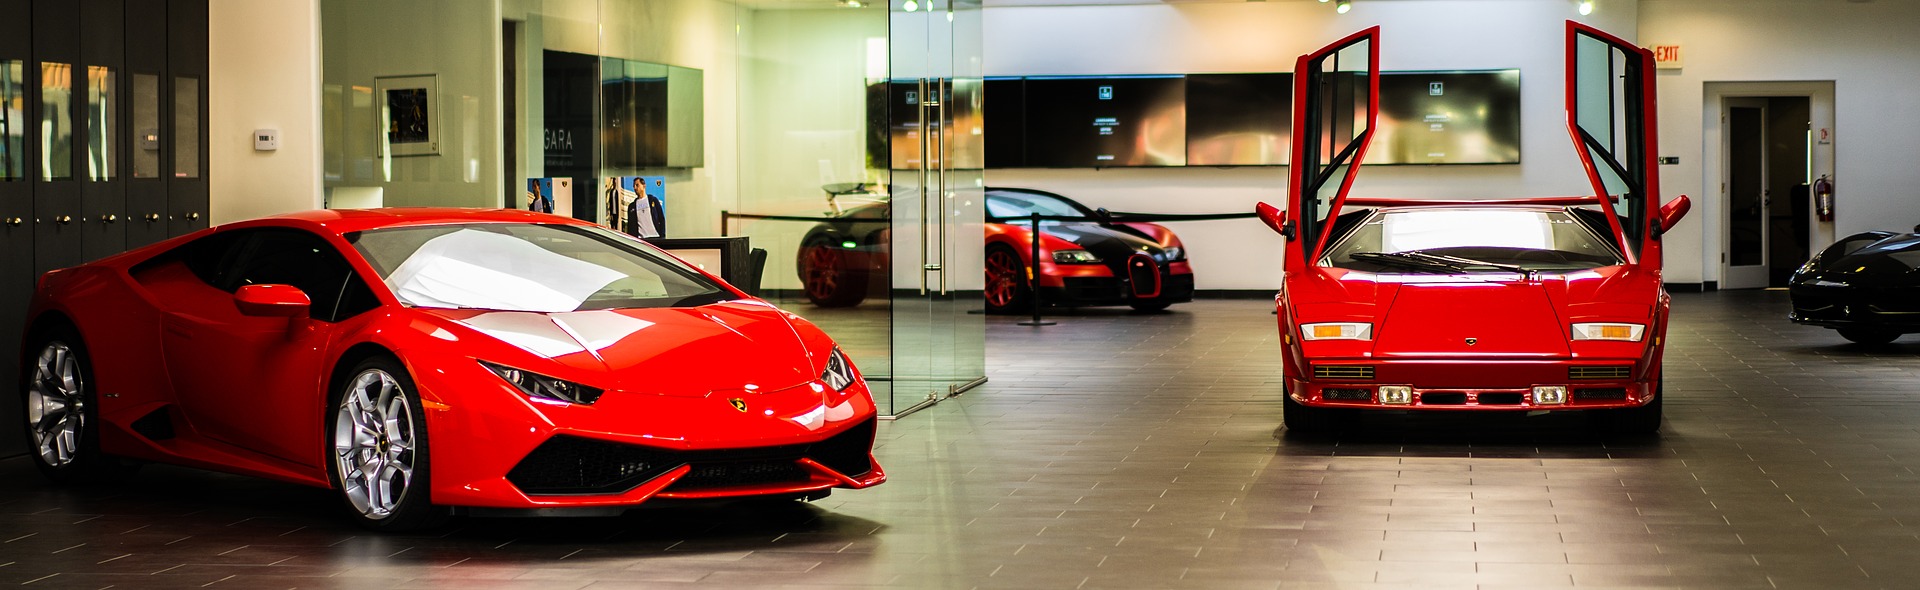 Luc van Bussel - Automotive Hospitality - 2 rode Ferrari's in een showroom waarvan 1 met de deuren omhoog open.